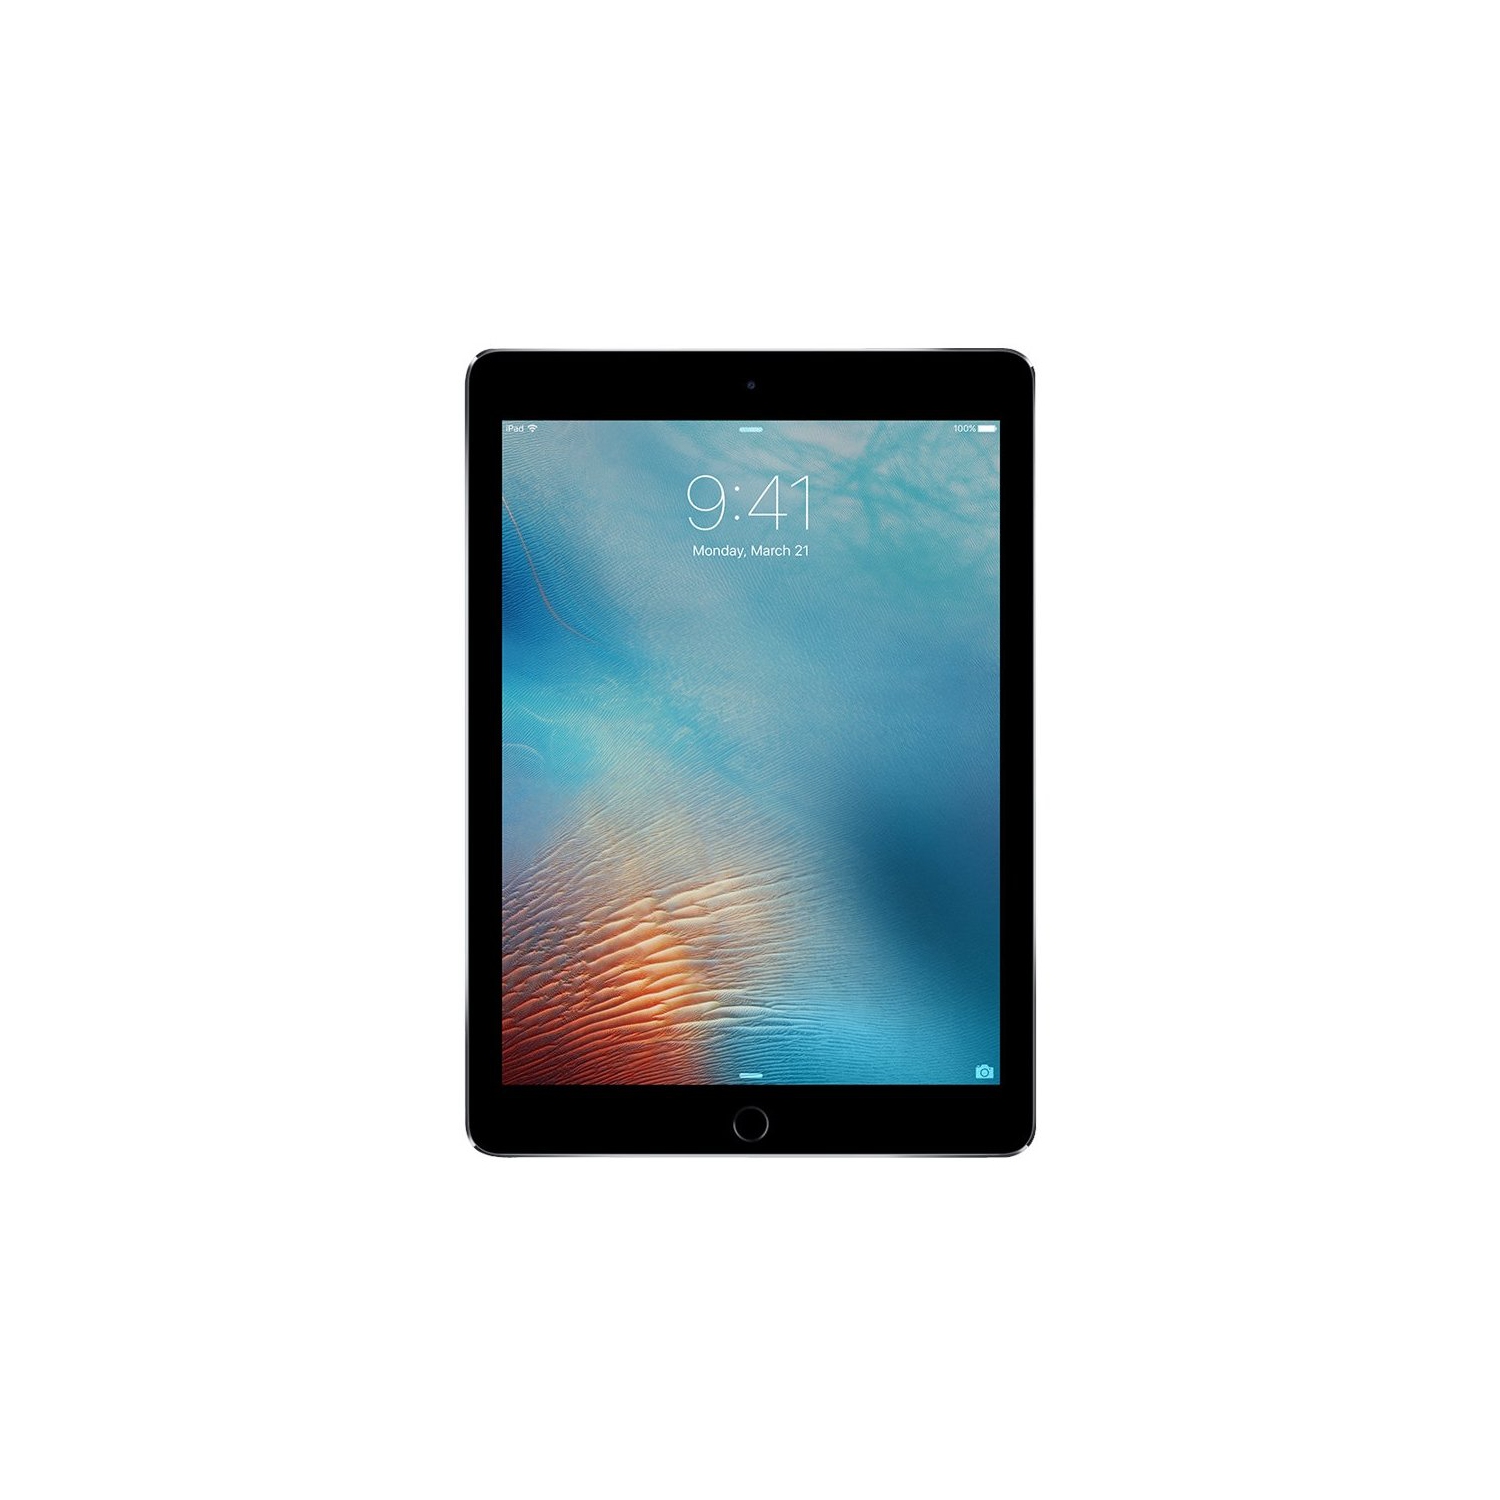 Refurbished (Good) - Apple iPad Pro 9.7" screen 128GB - WiFi (2016 - A1673) Space Gray